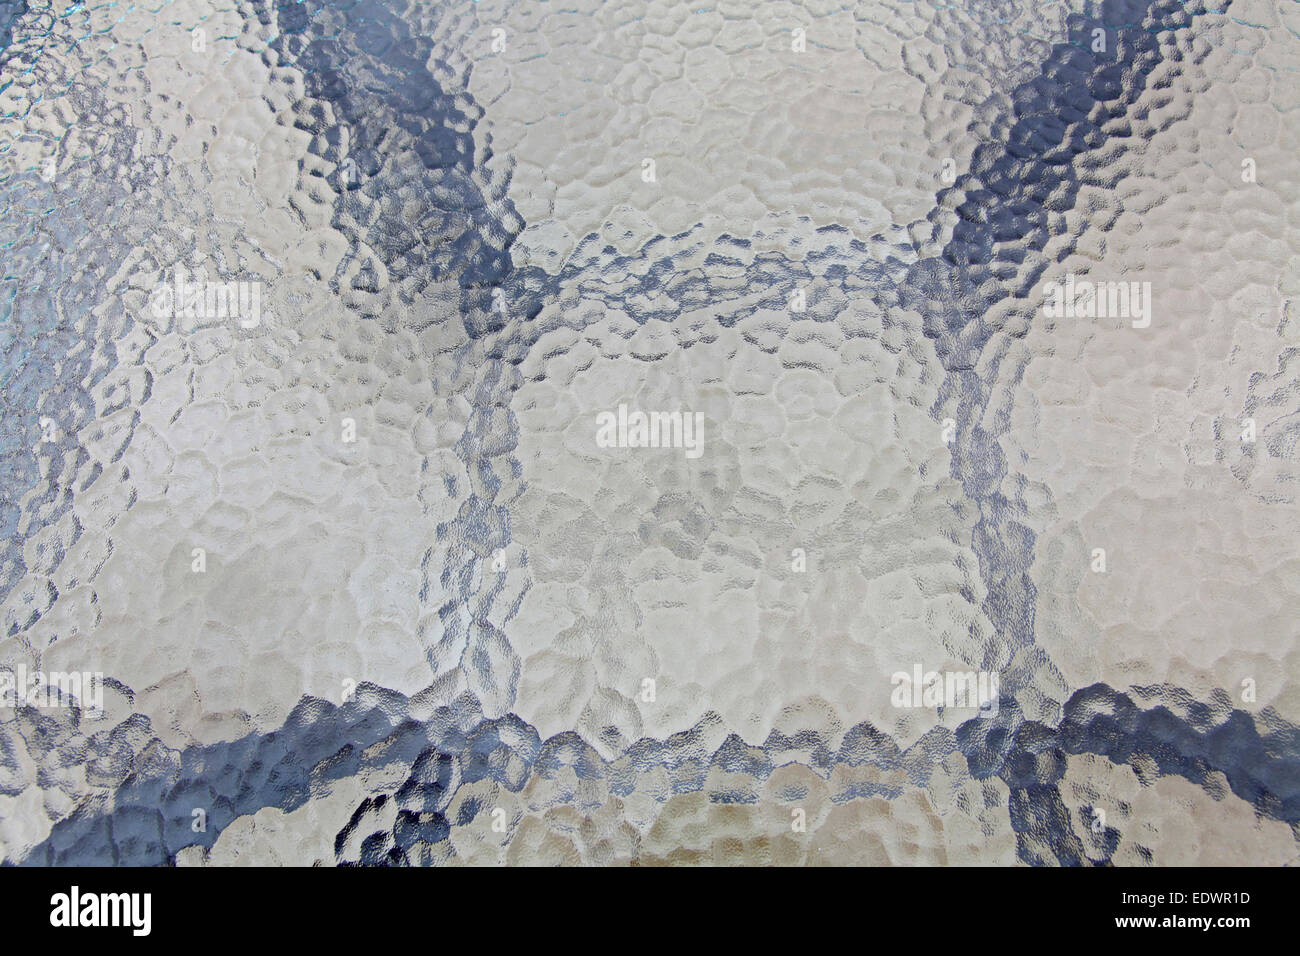 Mur de verre blanc transparent transparent surface texture Banque D'Images